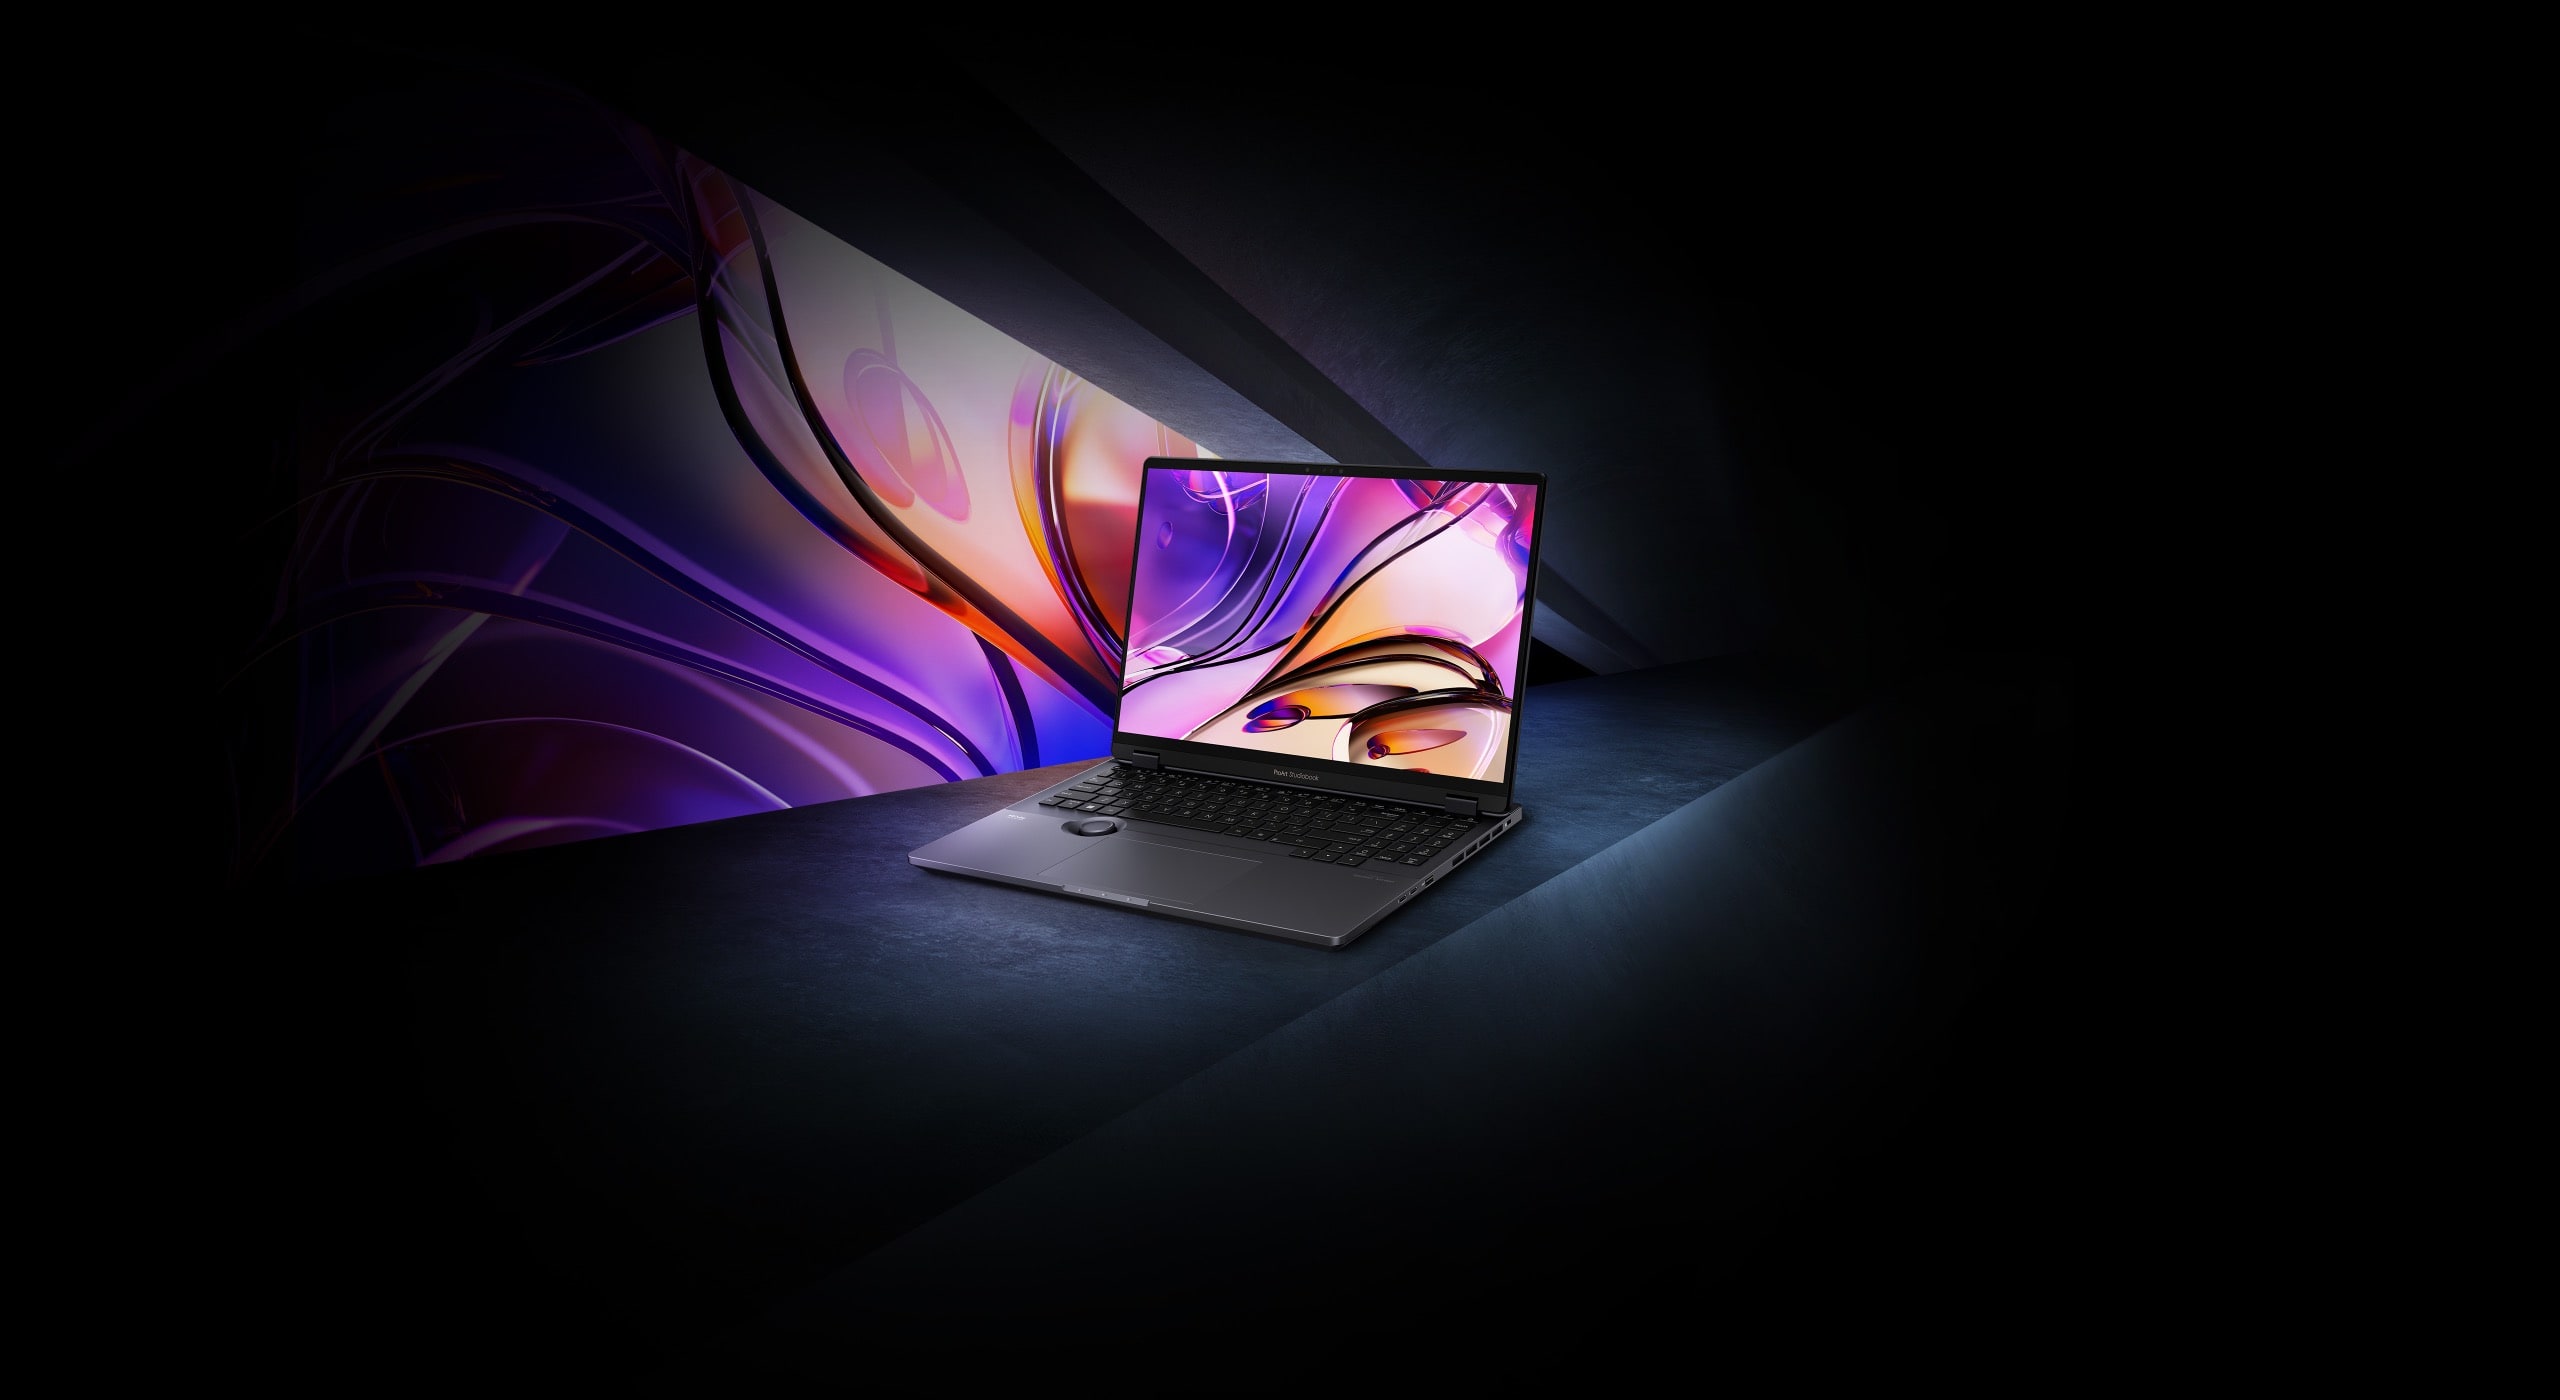 Ноутбук с красочным изображением на экране показан спереди.